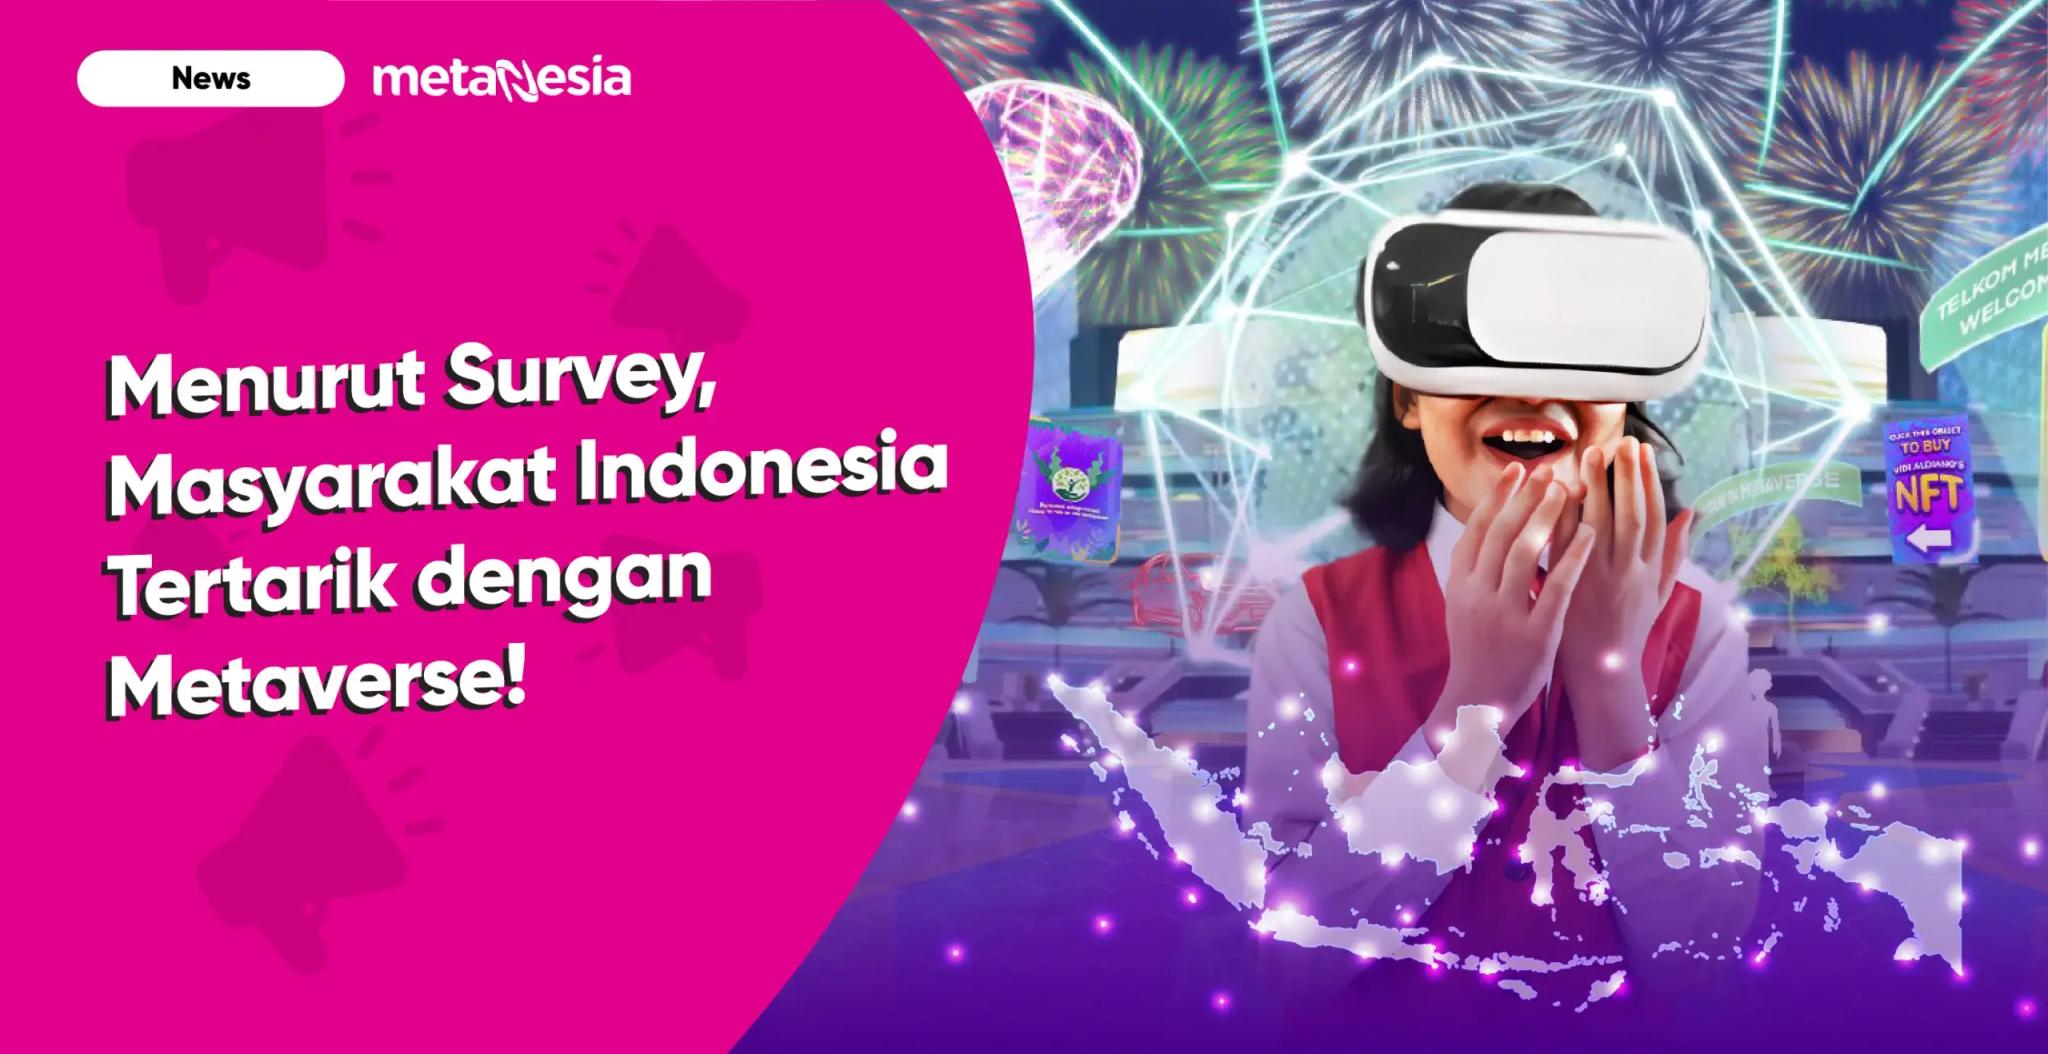 Menurut Survey, Masyarakat Indonesia Tertarik dengan Metaverse!